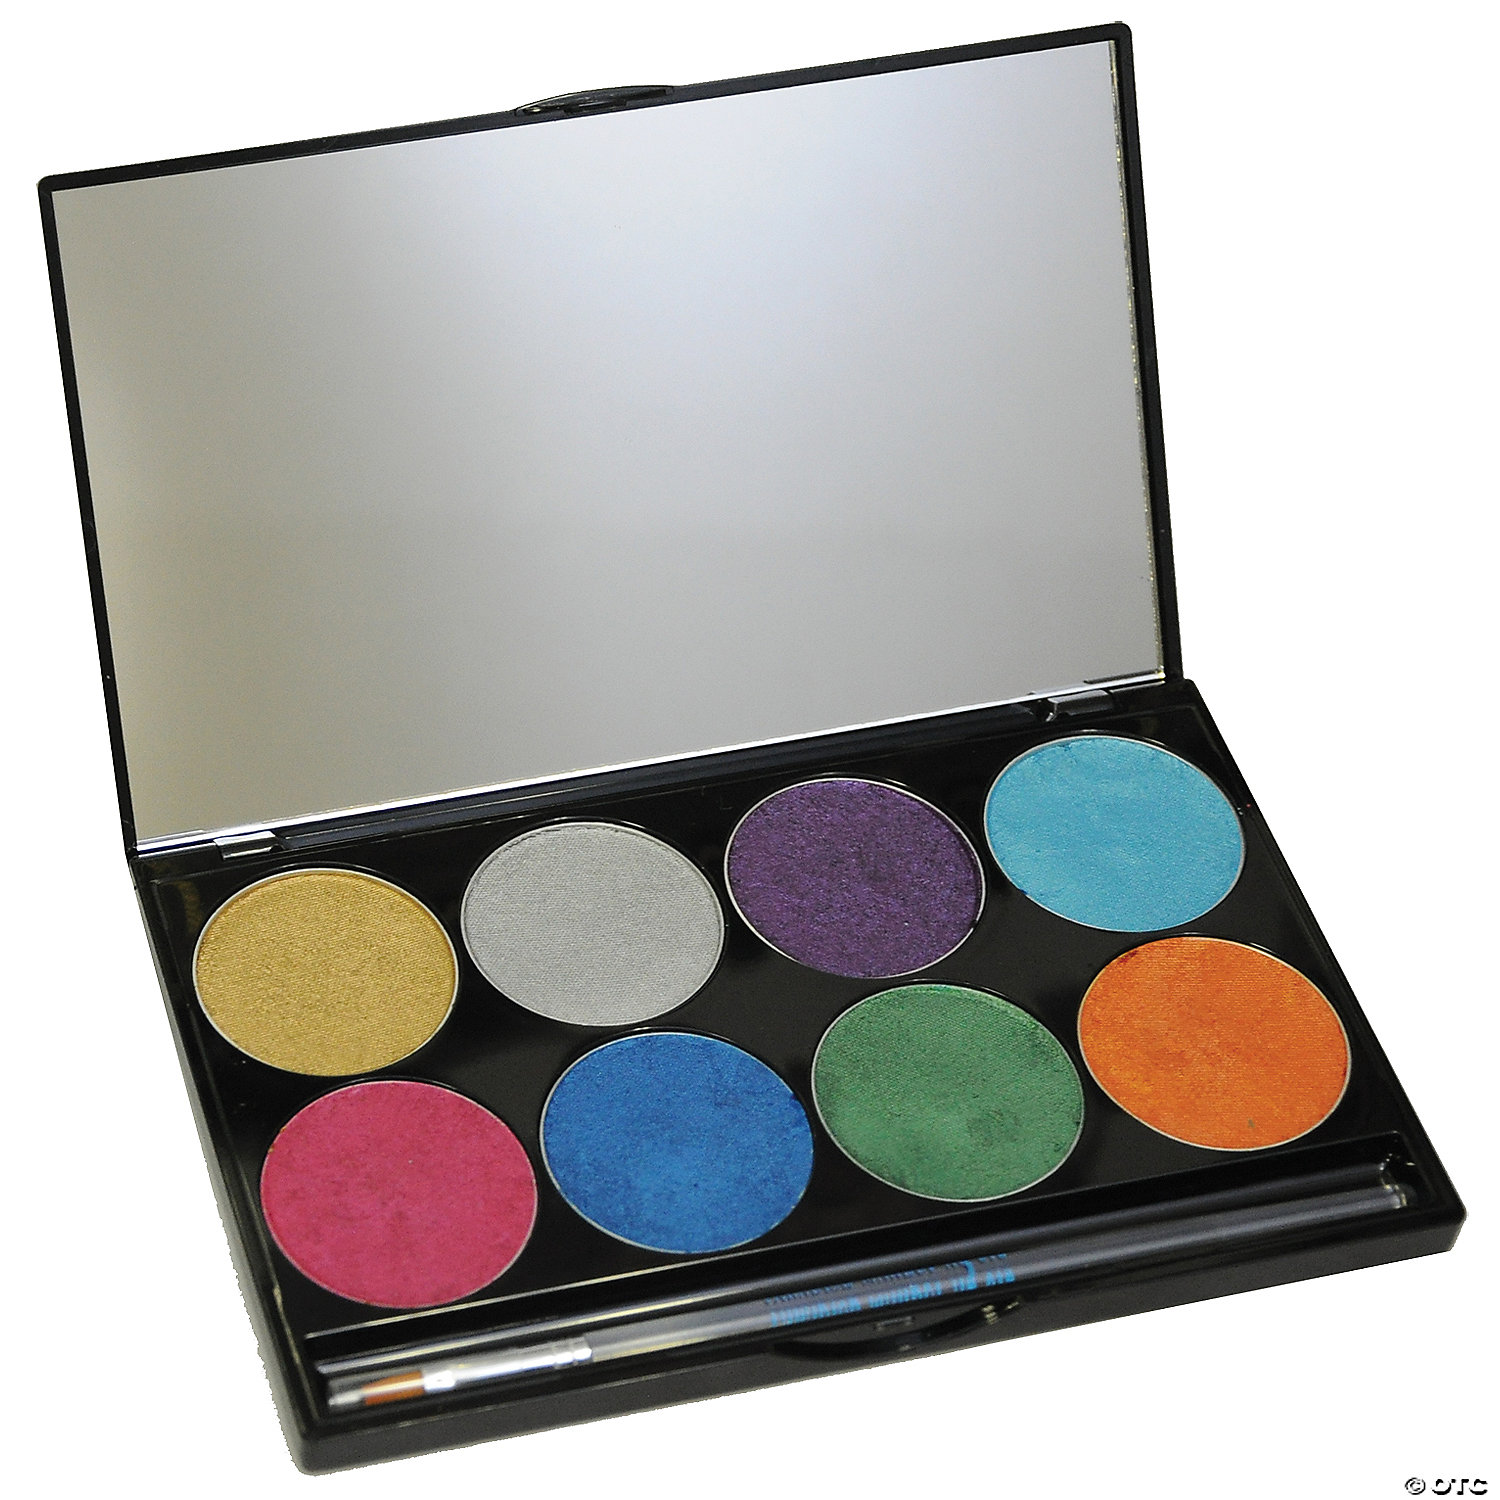  Mehron Makeup Paradise Makeup AQ 8 Color Basic Palette, Magnetic Refillable Body Paint & Face Paint Palette